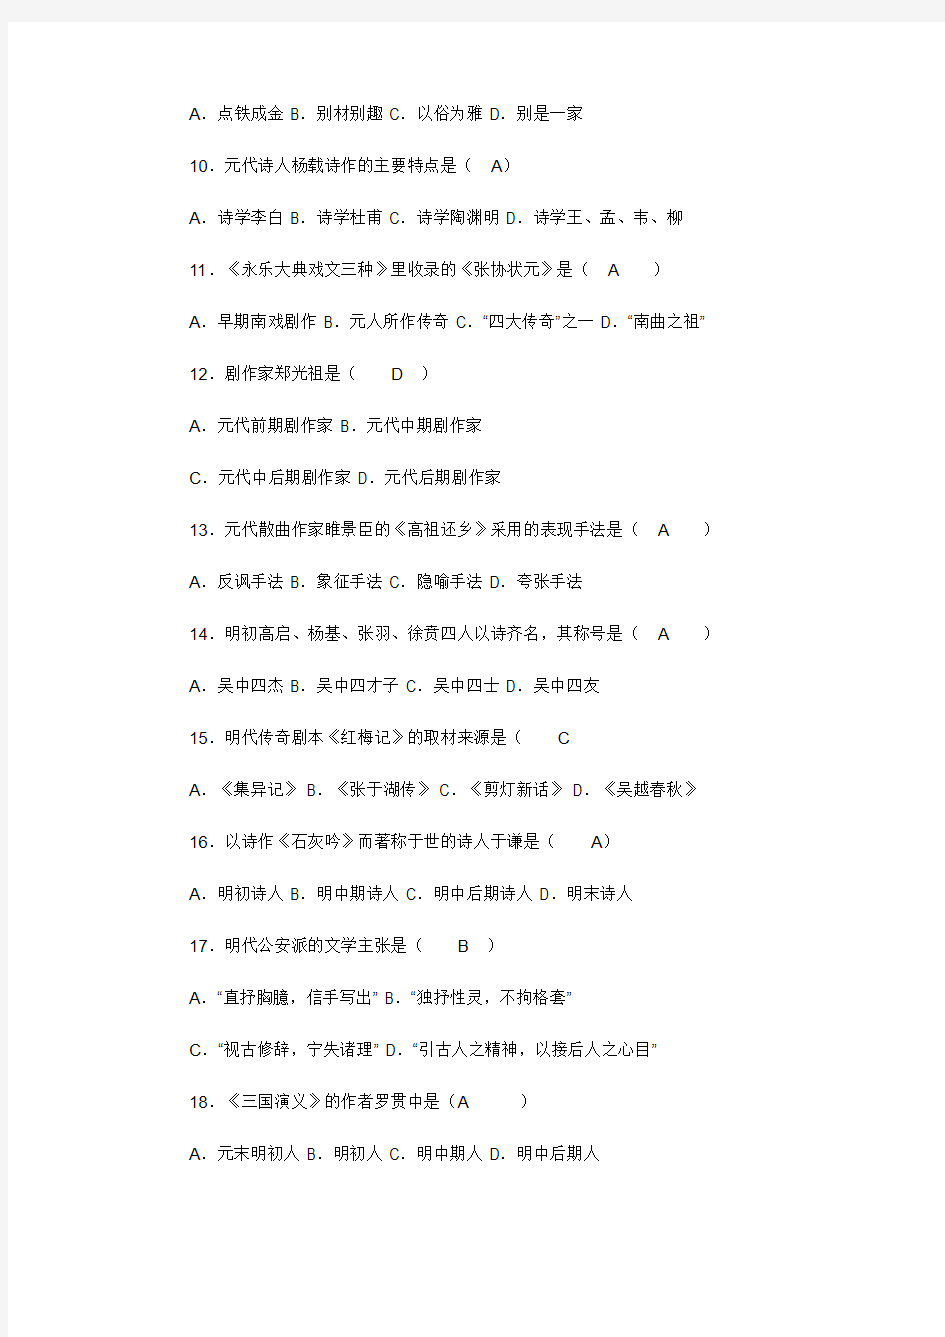 2005年高等教育自学考试全国统一命题考试中国古代文学史